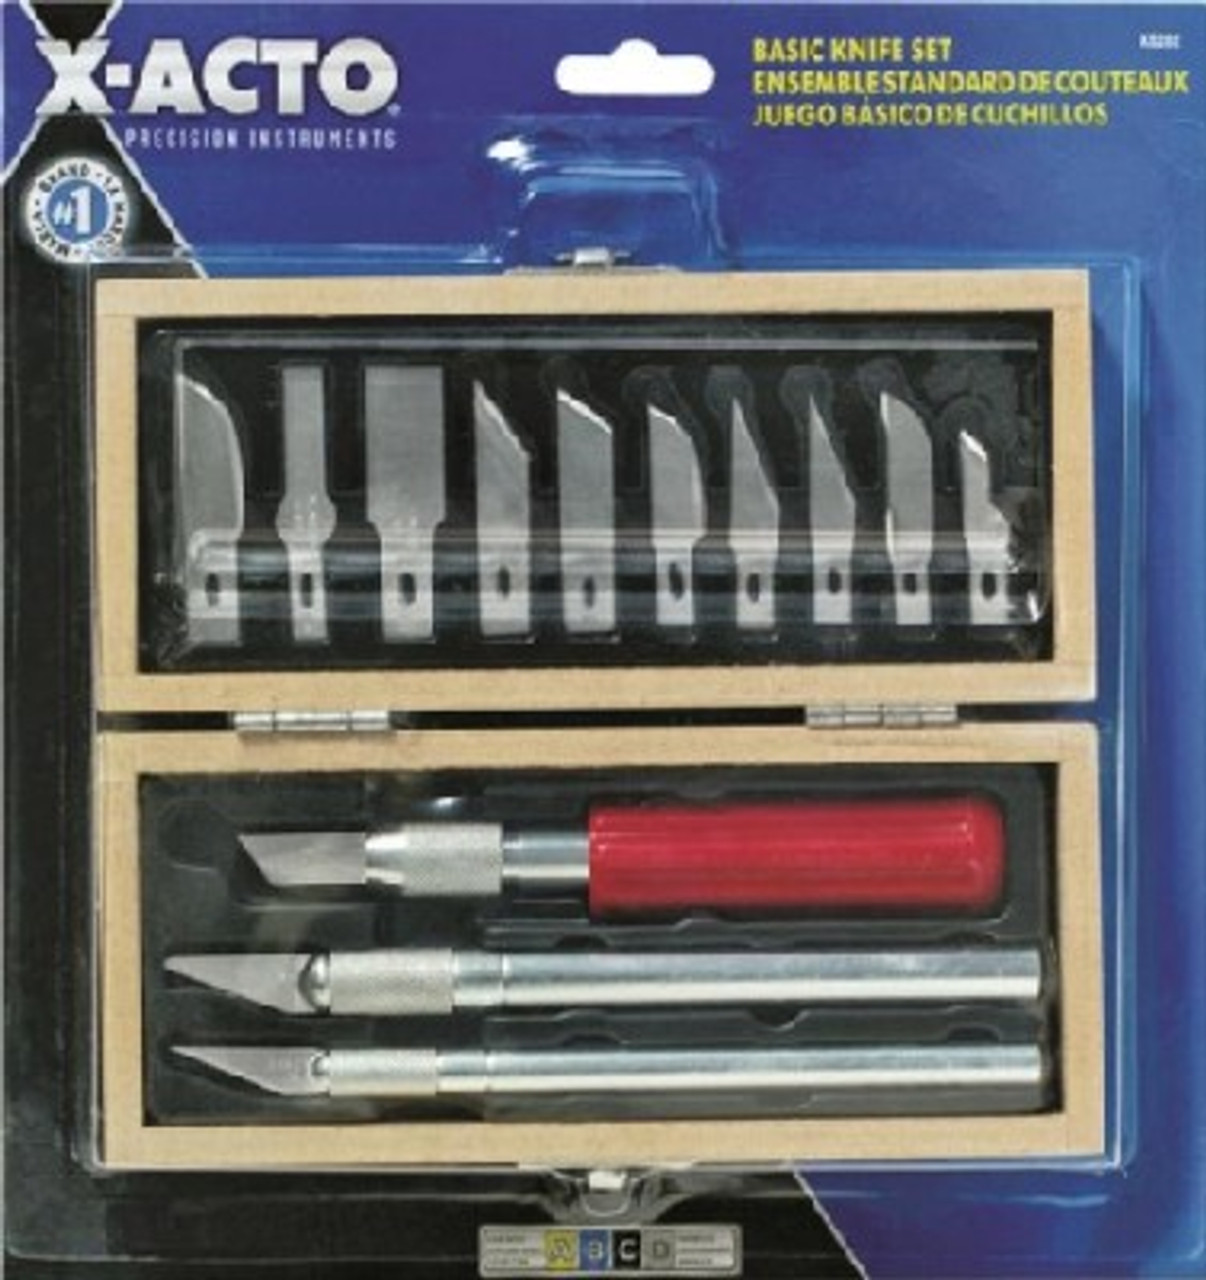 Xacto Precision #5 Knife, X-acto